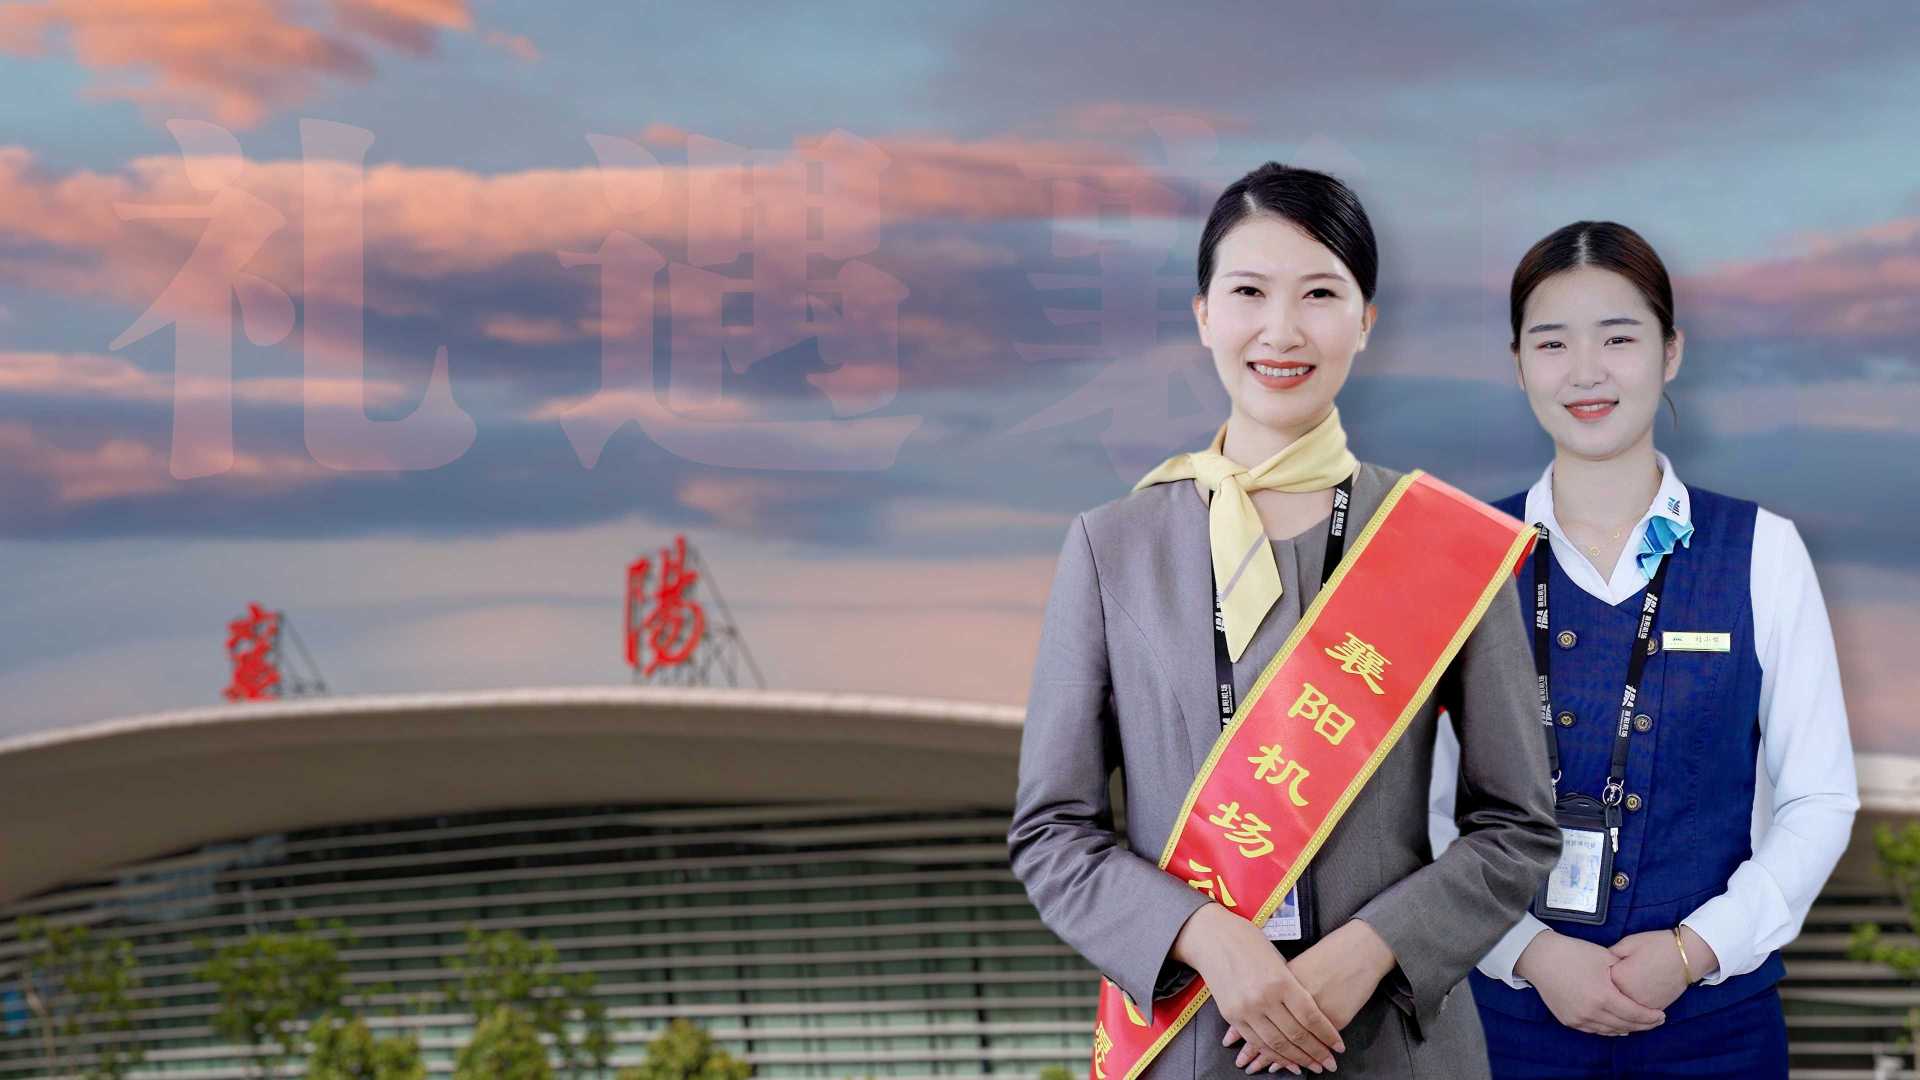 襄阳机场 “最美窗口”宣传片